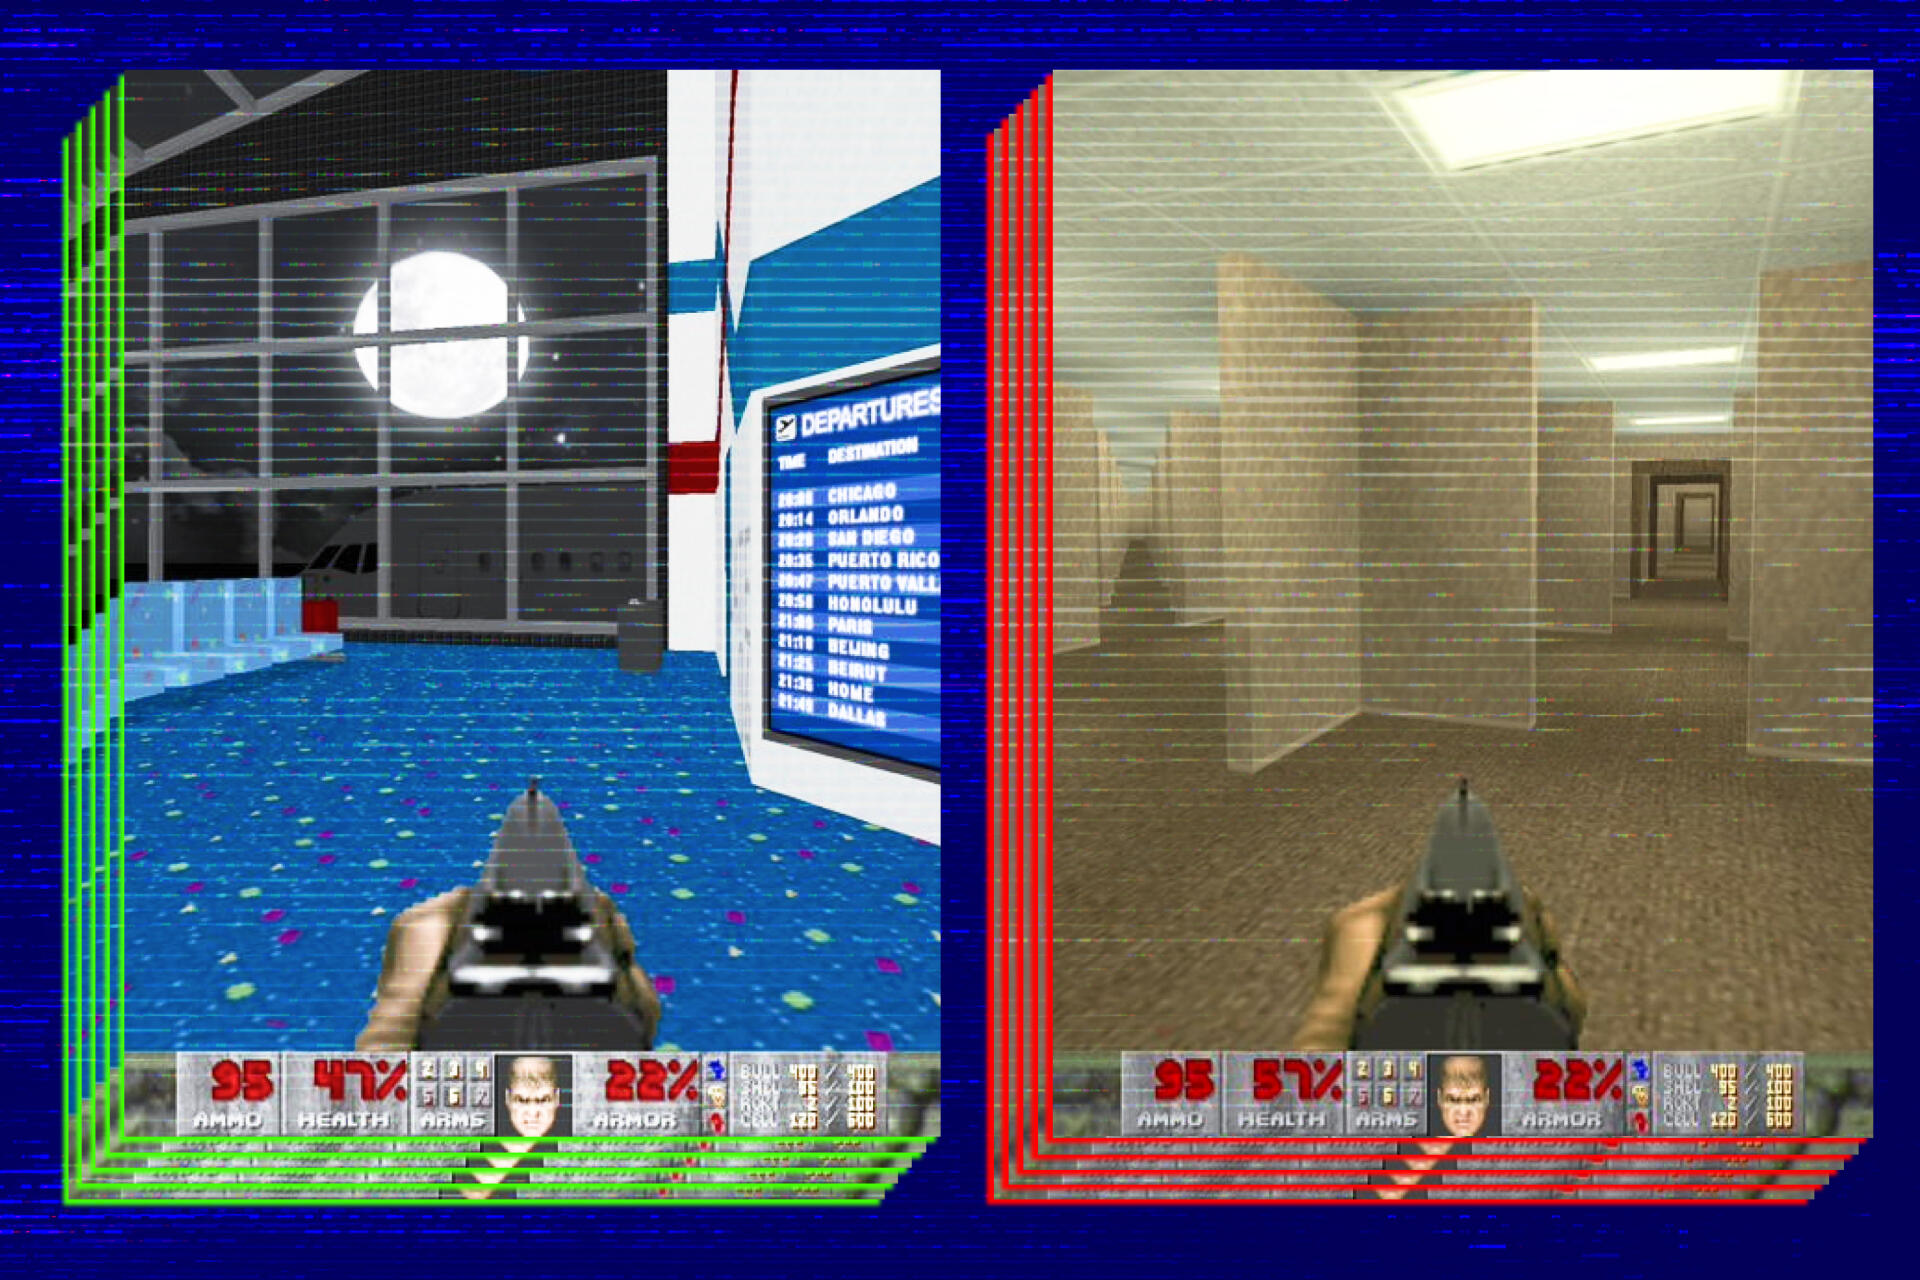 Si intentas hacer trampa atravesando paredes, el jugador puede encontrarse rápidamente atrapado en lugares inusuales e inquietantes.